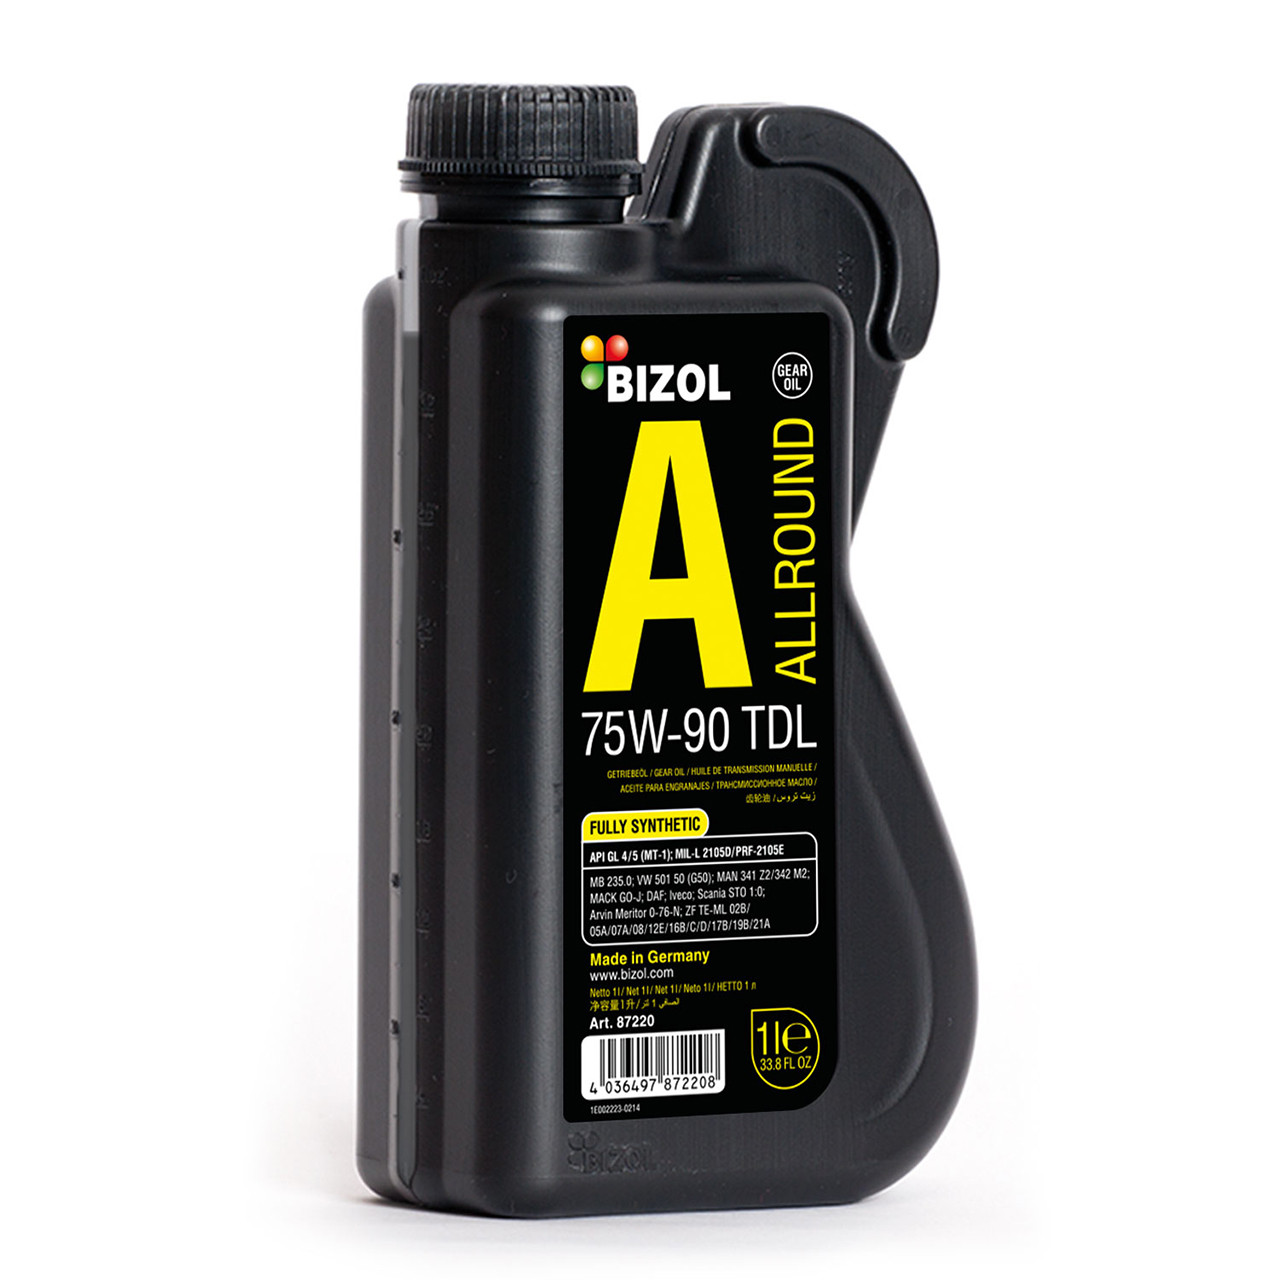 BIZOL Allround Gear Oil TDL 75W-90 UNI 1л (B87220/B88220) Синтетичне трансмісійне масло